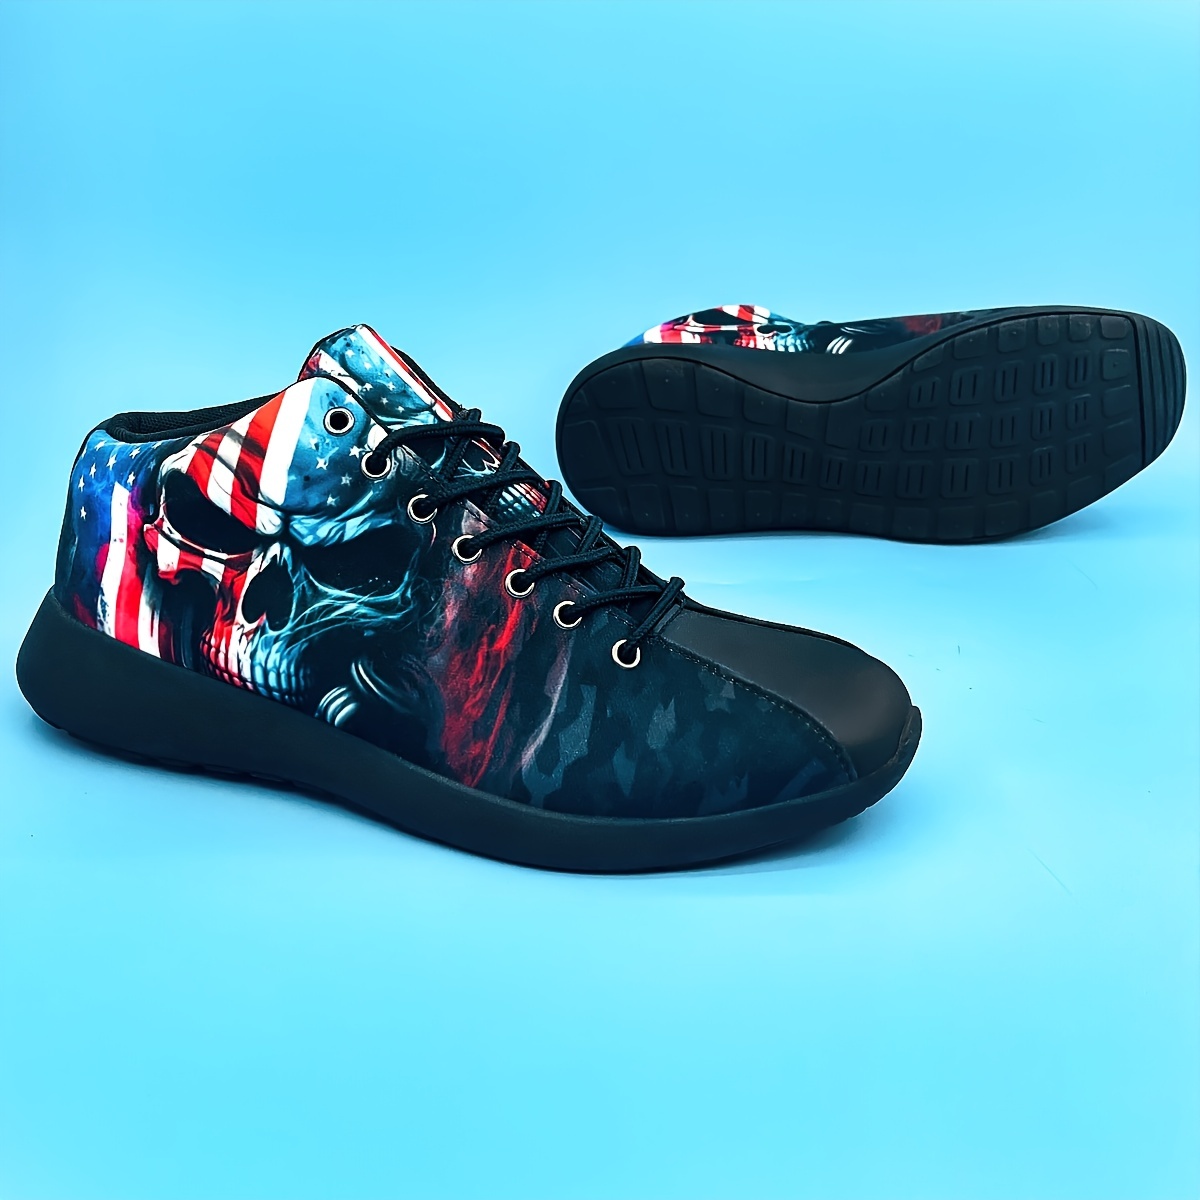 Теннис | Adidas представила вязаные кроссовки Stan Smith.